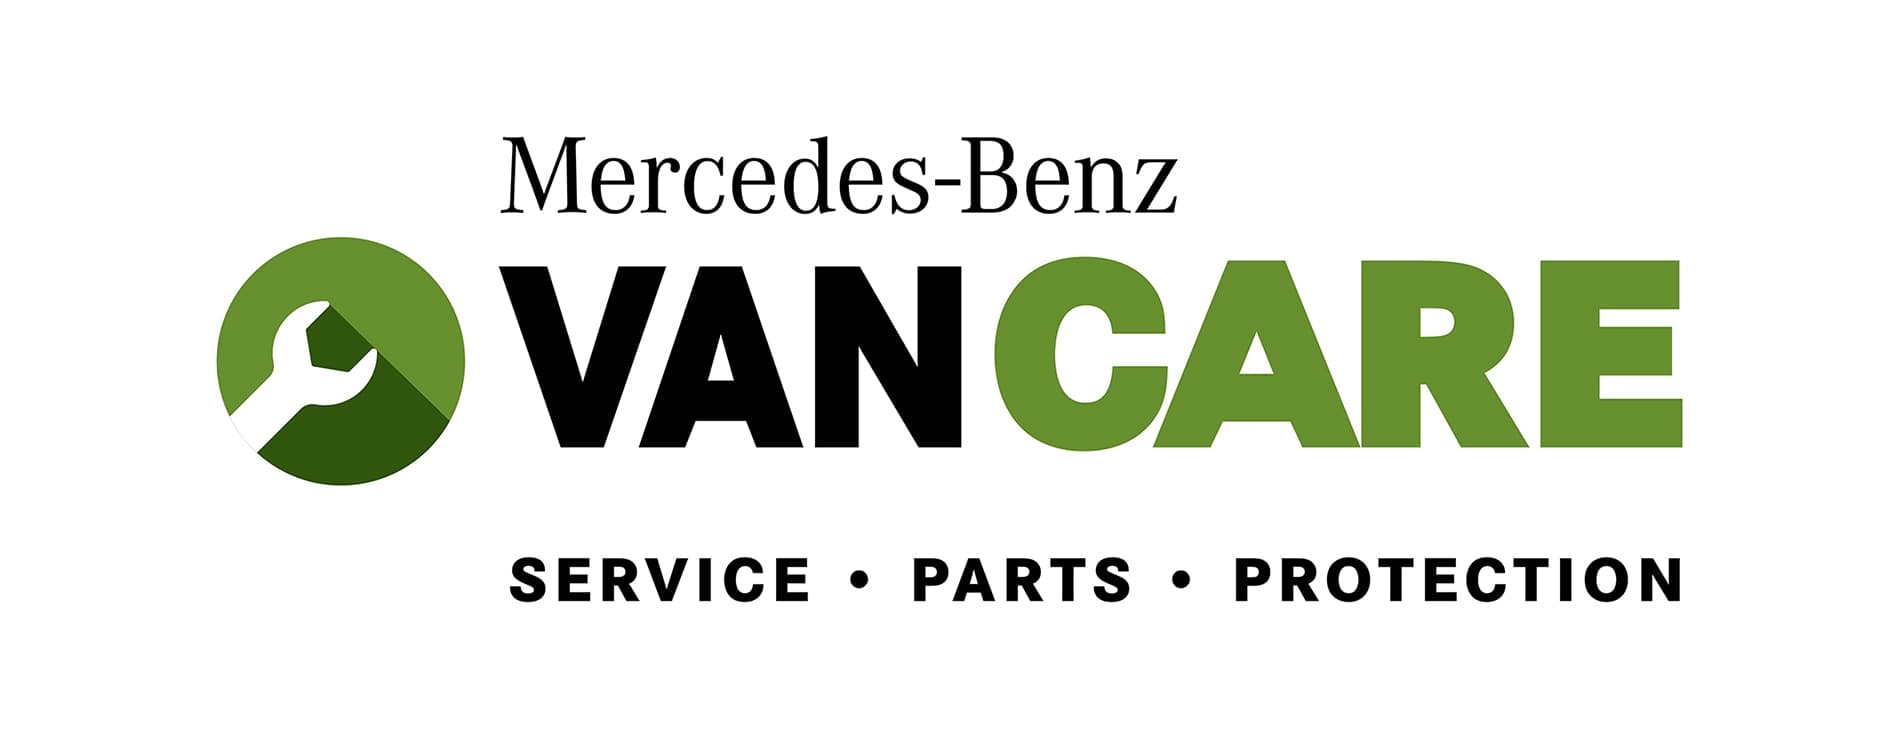 Mercedes-Benz VANCARE